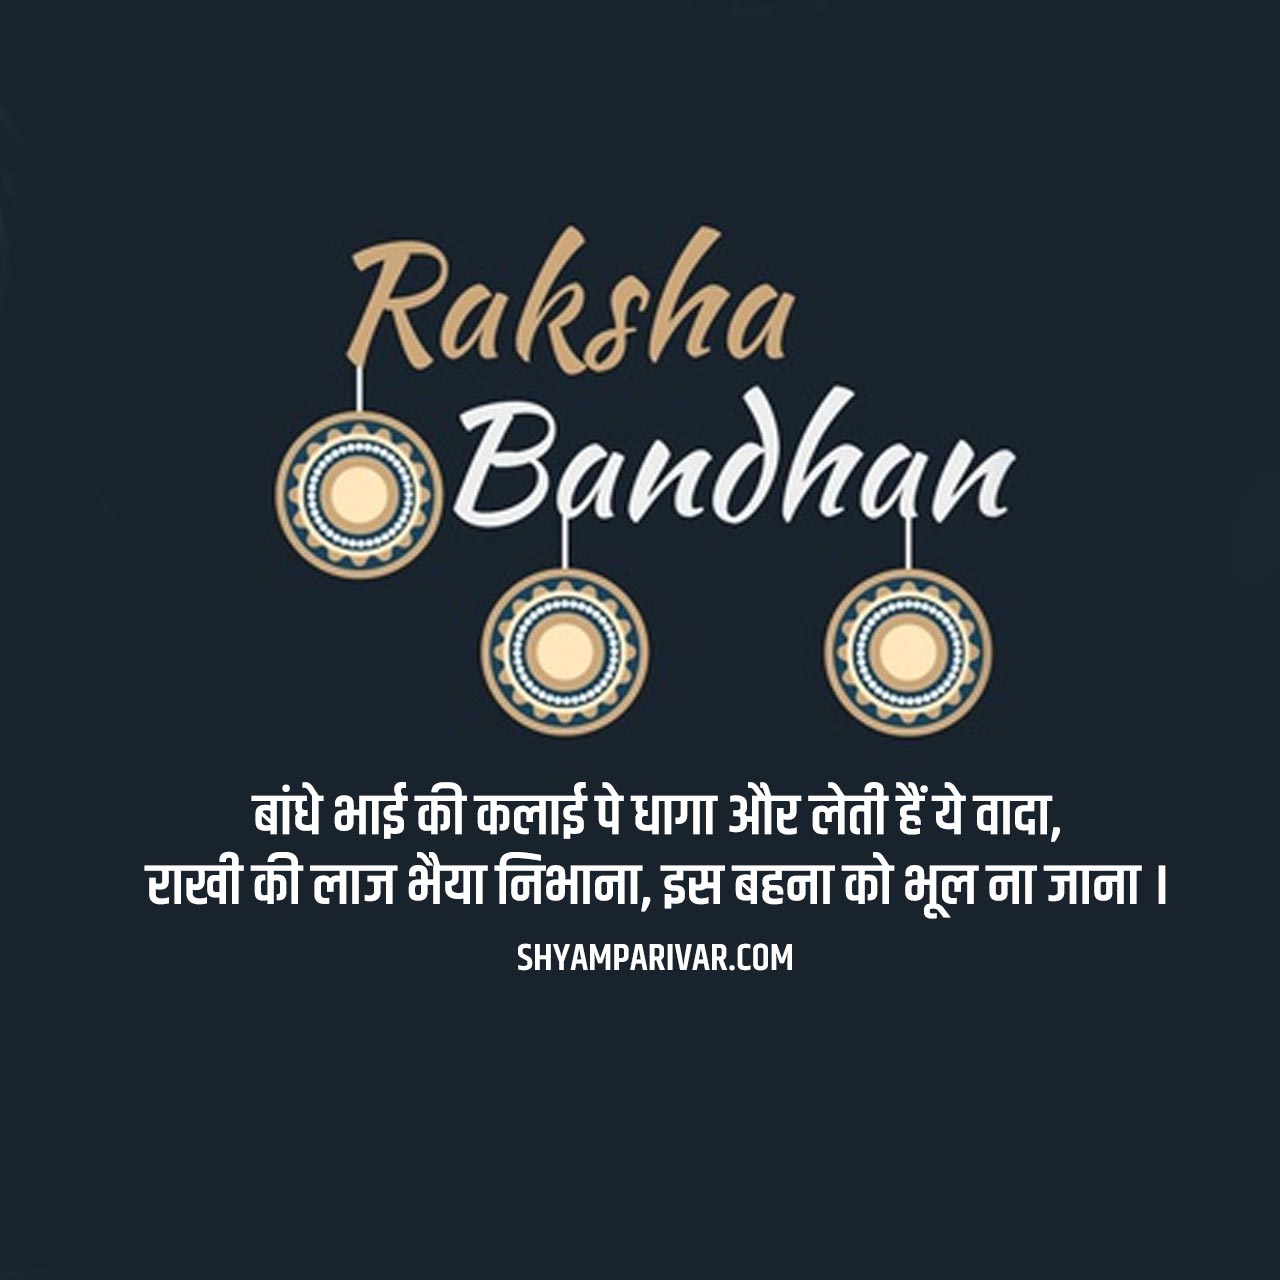 Happy Raksha Bandhan Quotes Images and PHotos in Hindi